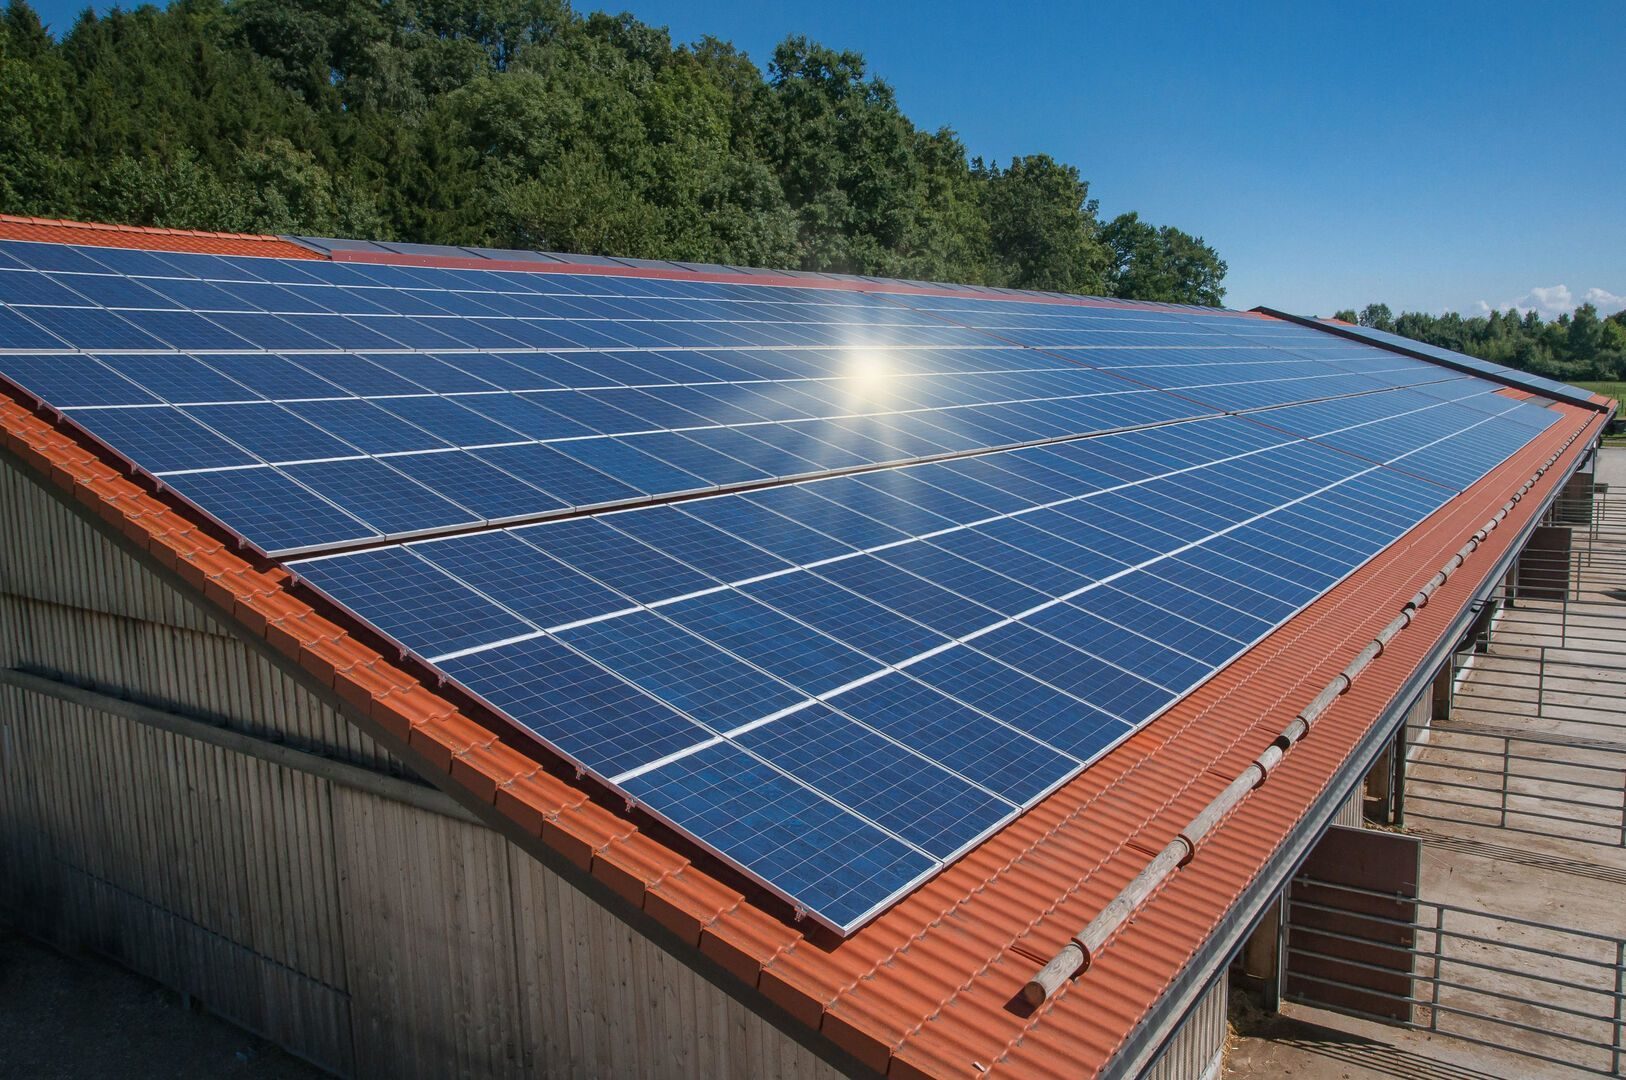 techo-tejado-solar-fotovoltaico-energia-renovable